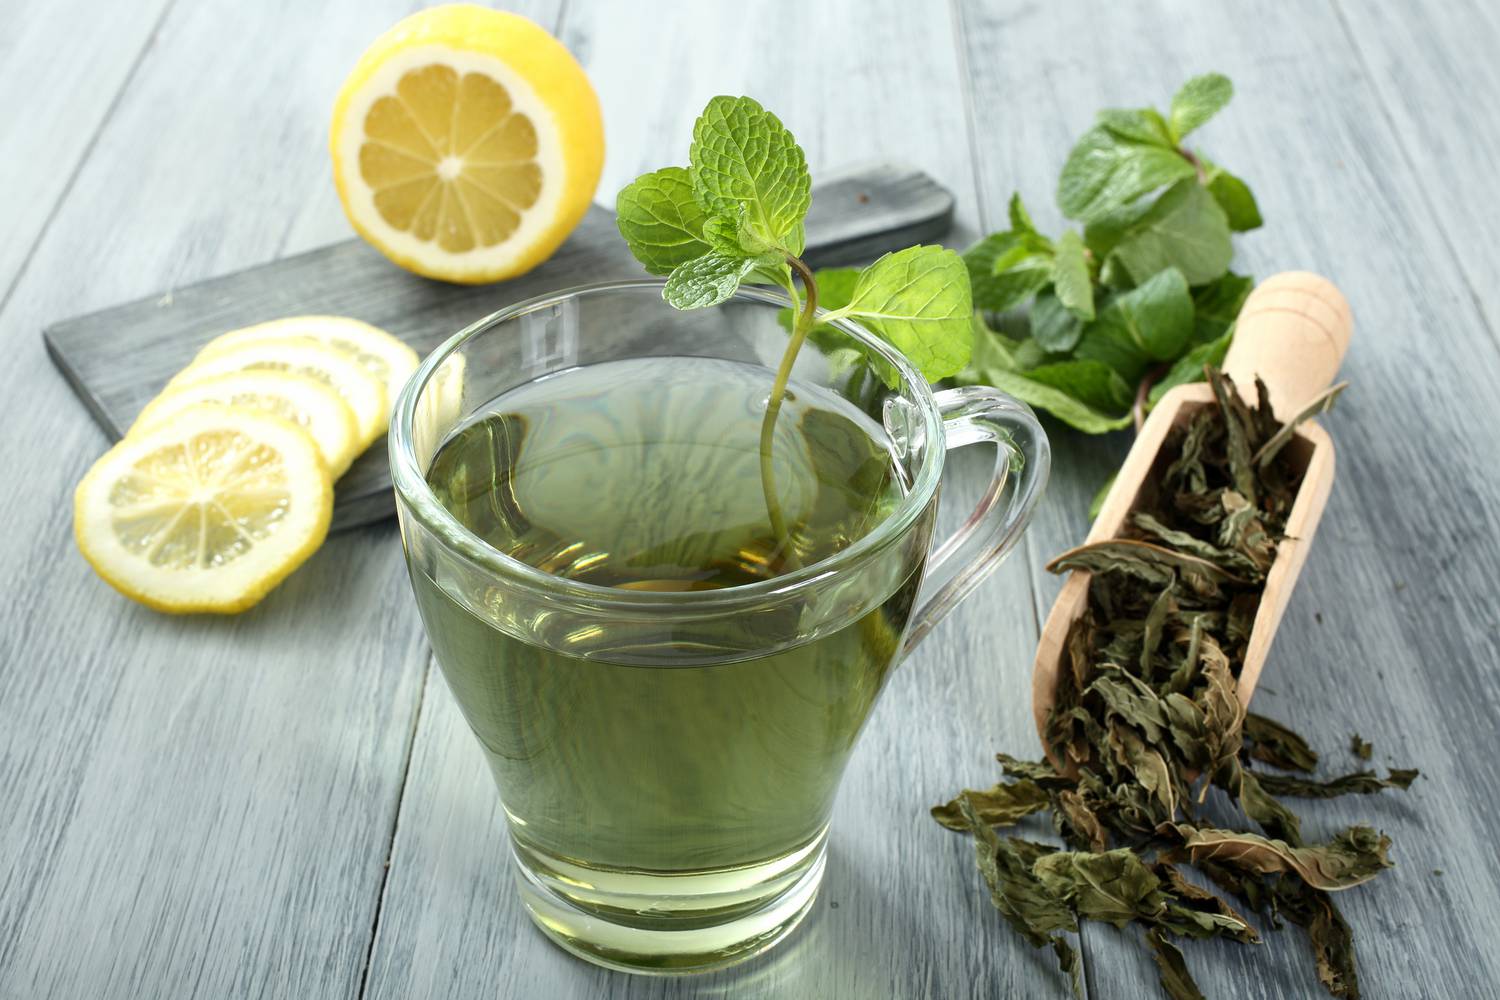 Fogyókúra, méregtelenítés és a zöld tea fogyasztása - Egészséges fogyás, egyszerűen és könnyedén